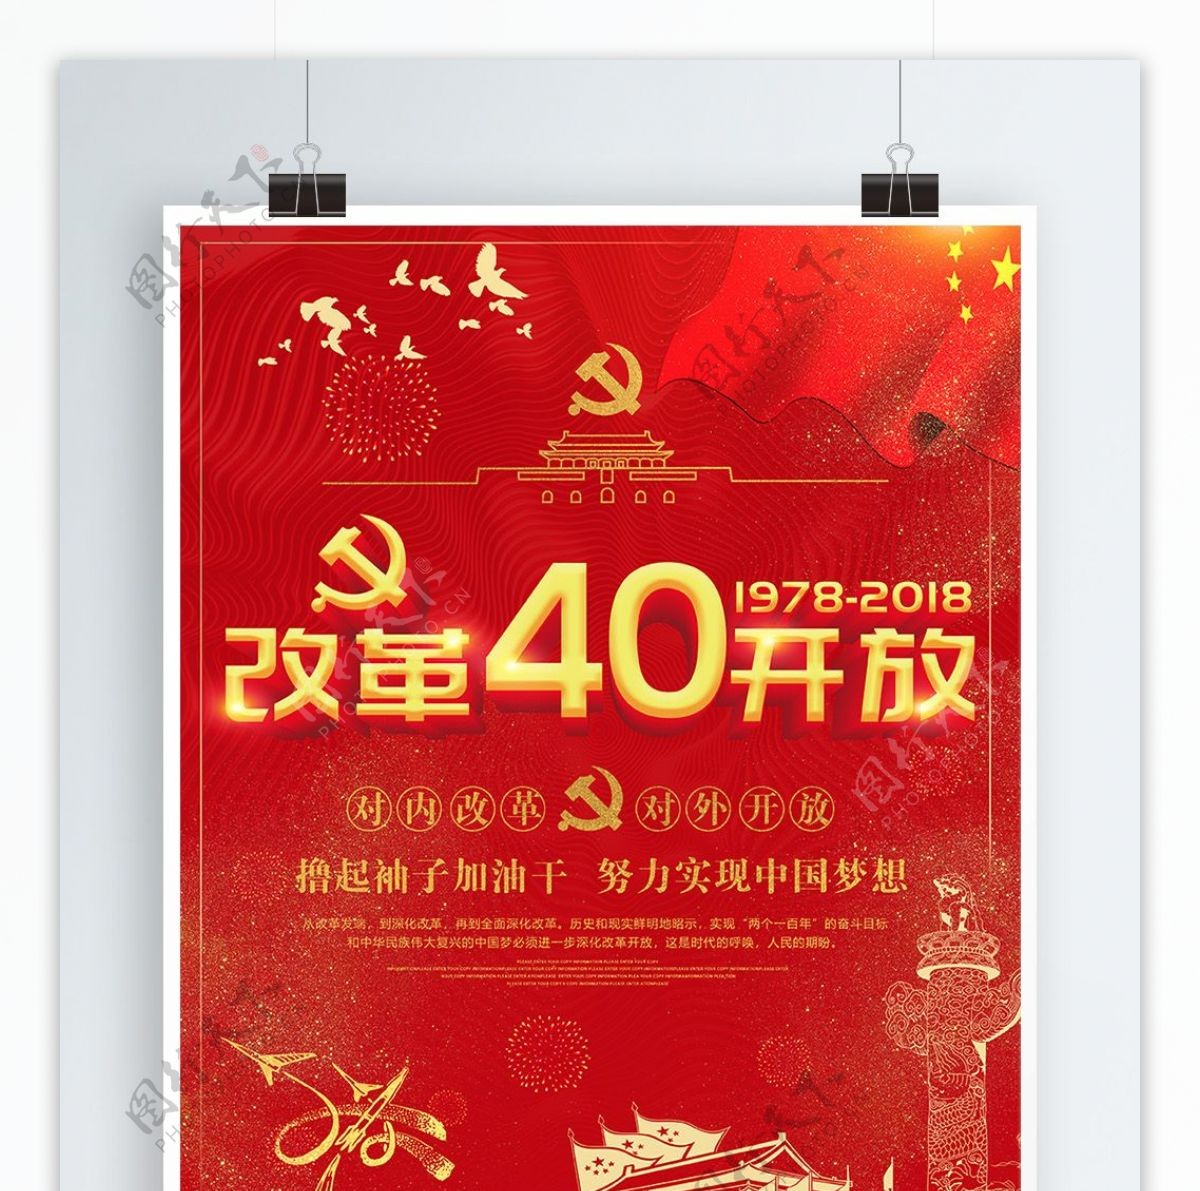 红色纪念改革开放四十周年海报模板设计